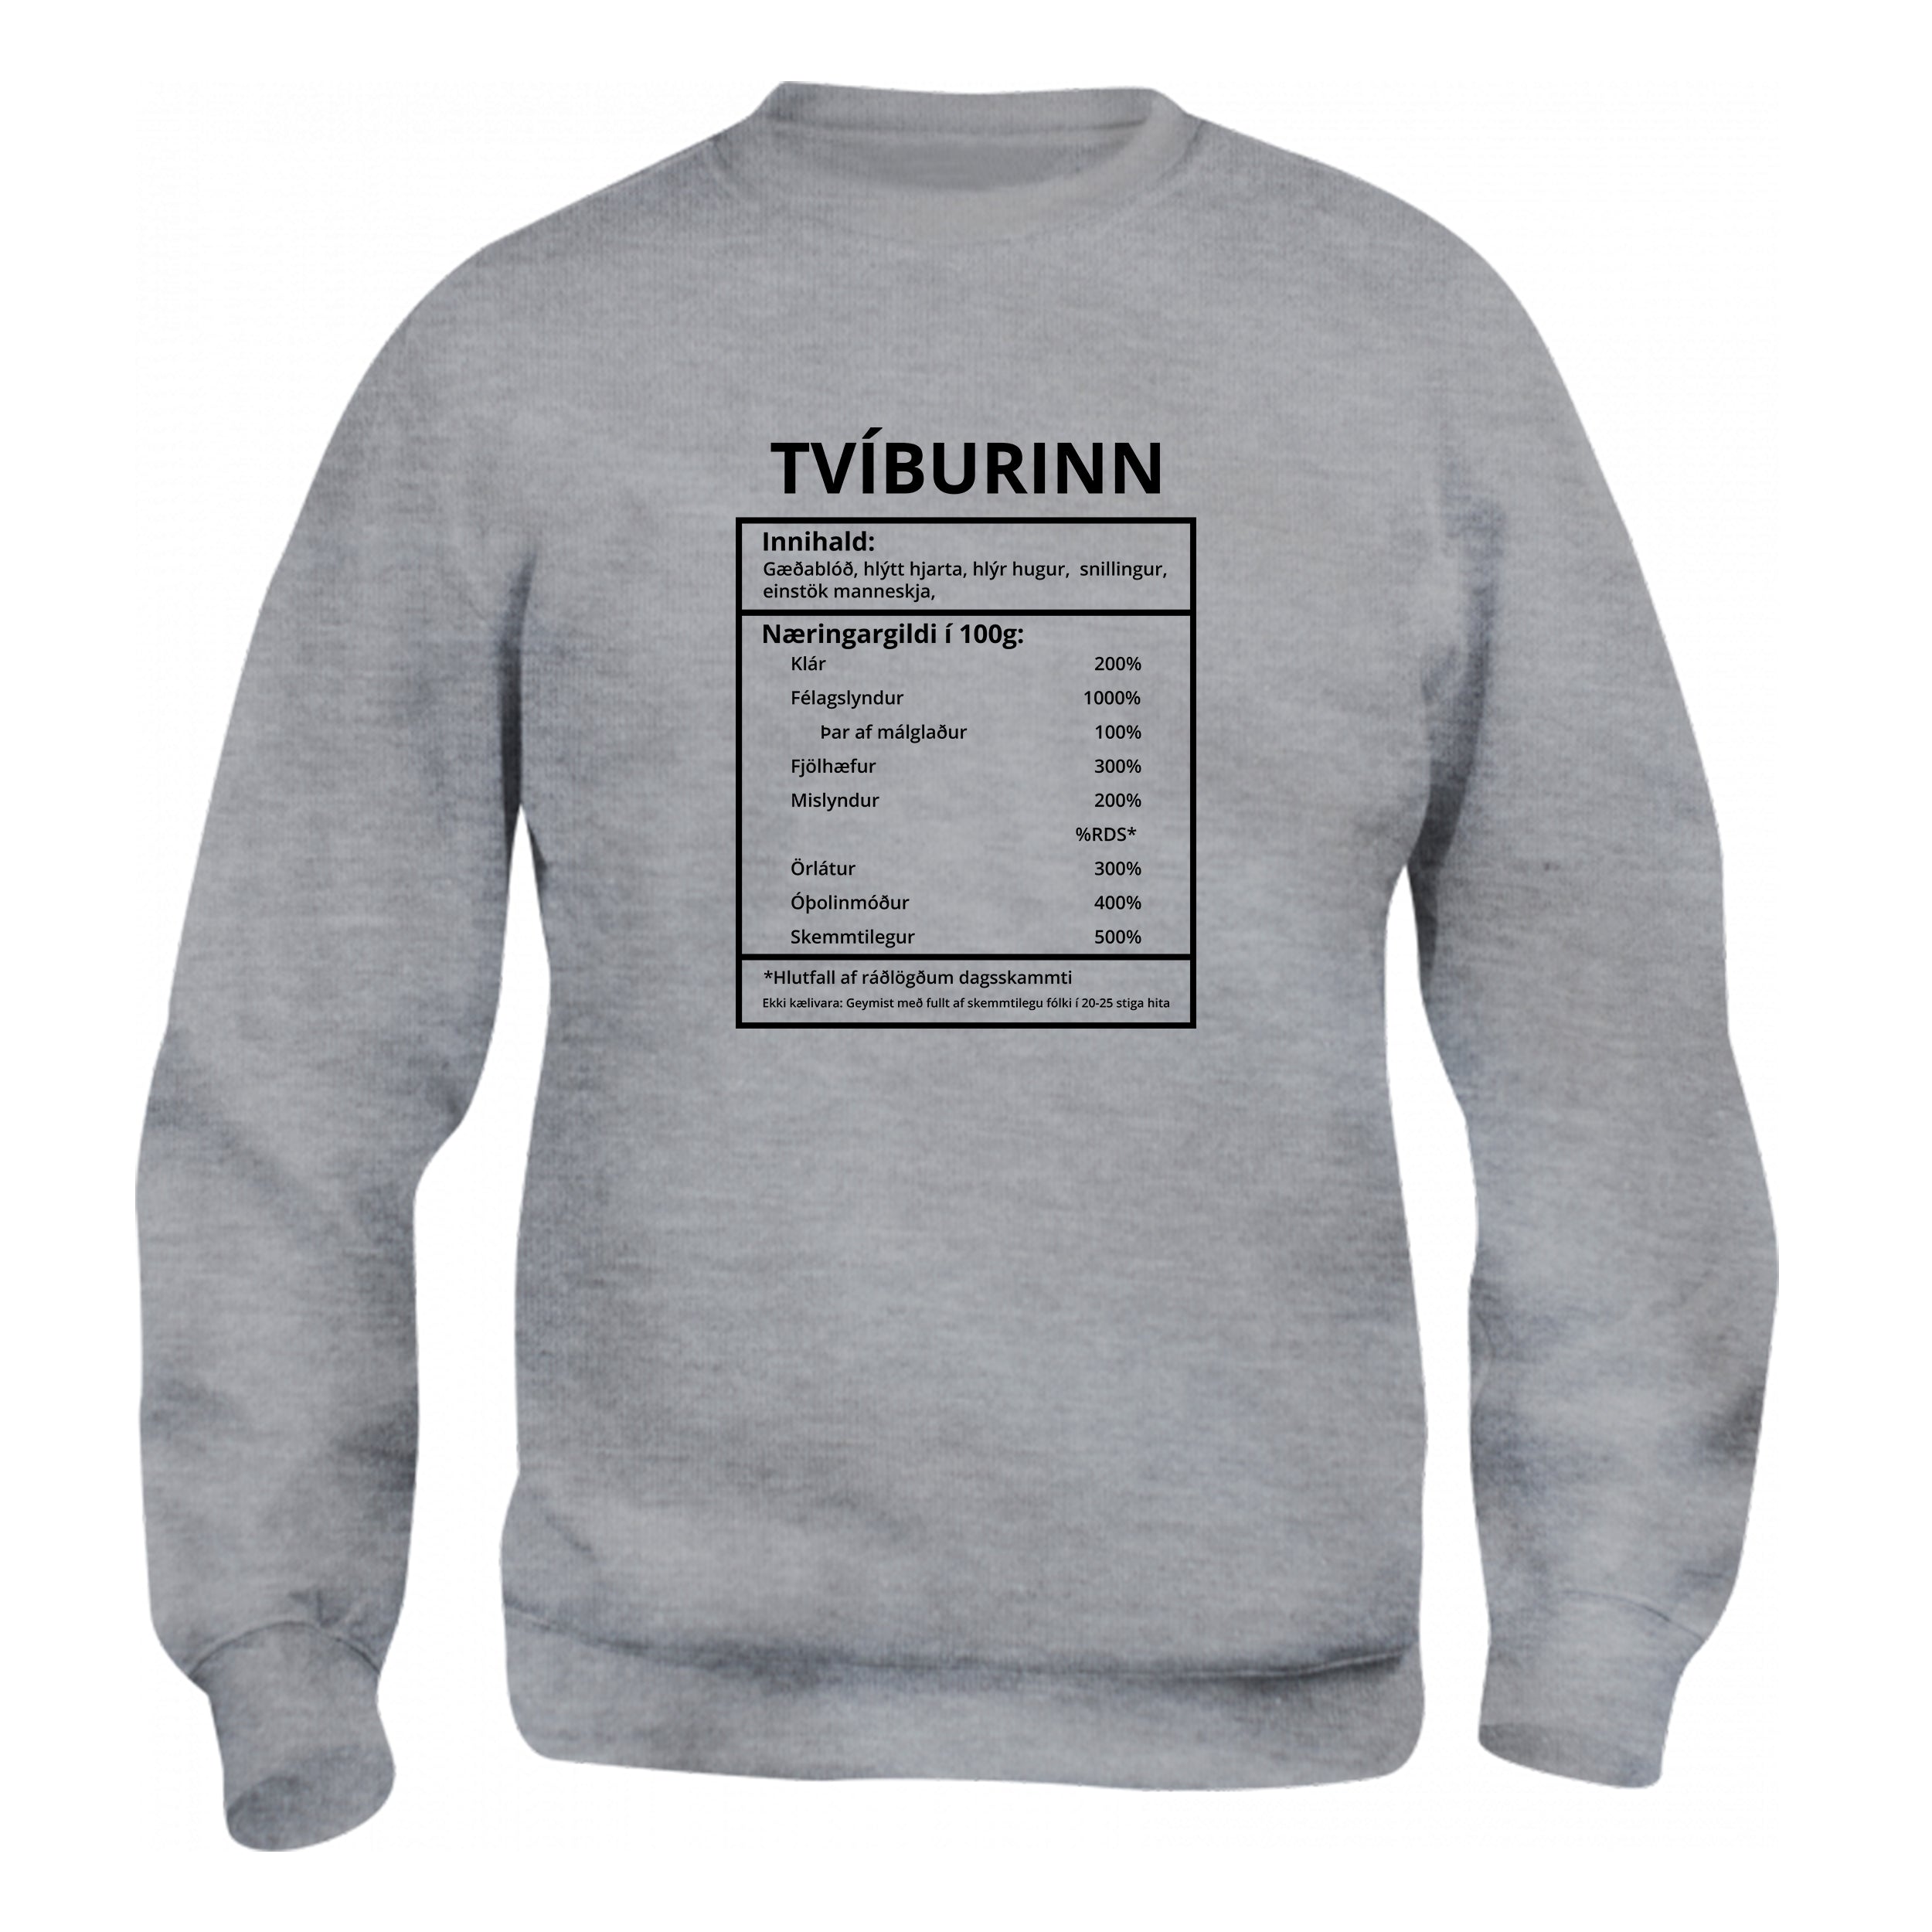 Tvíburinn - sweatshirt